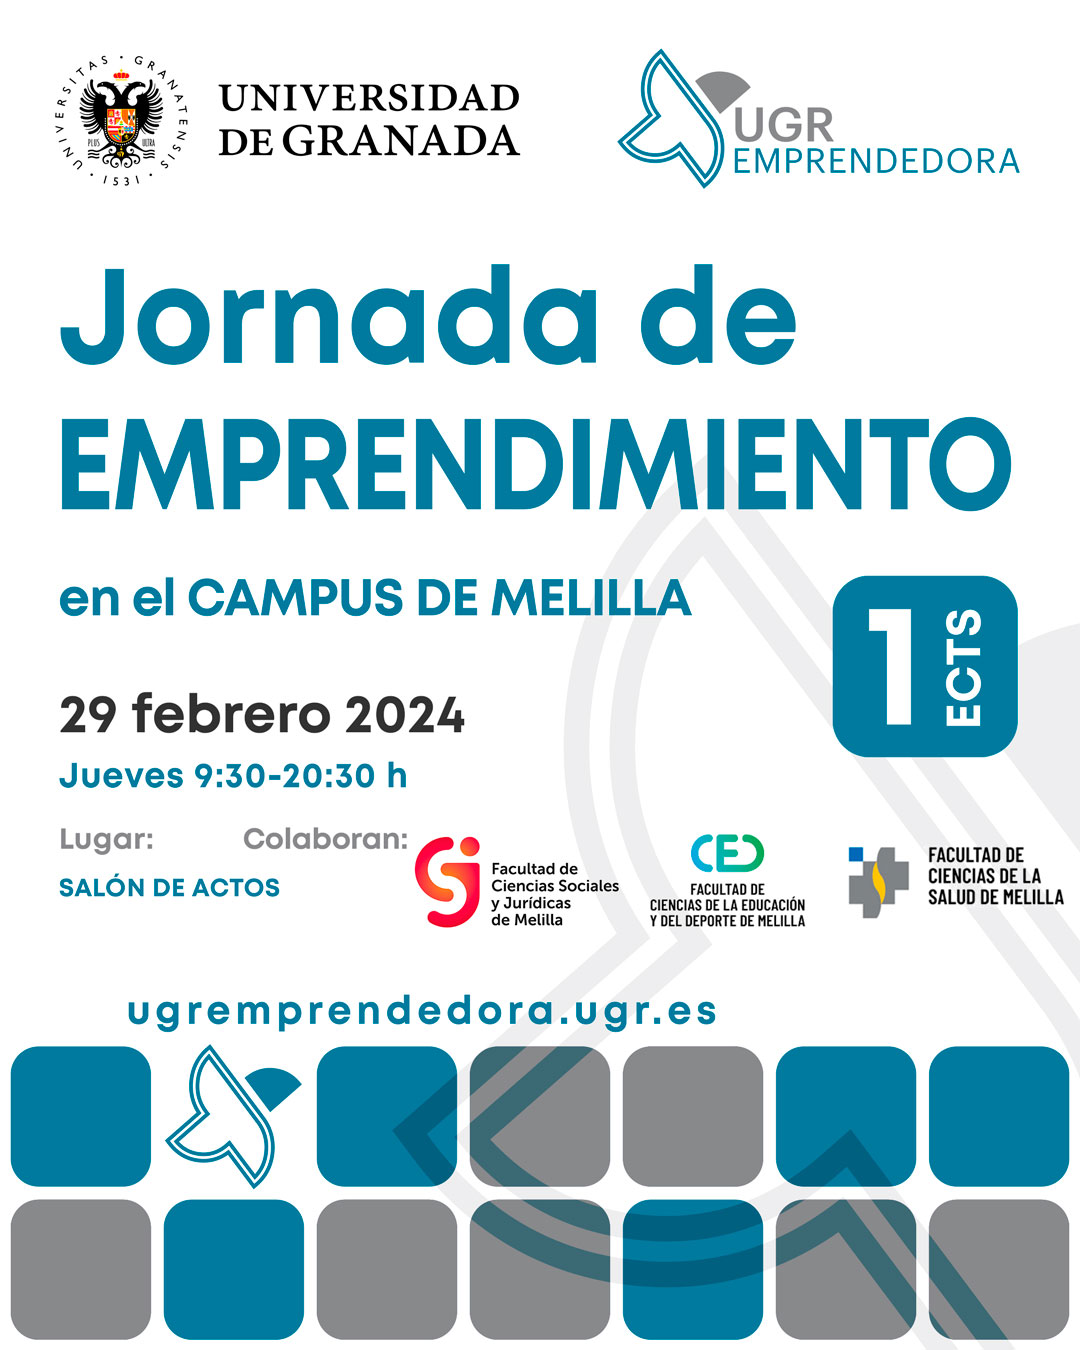 Inscríbete en la Jornada de Emprendimiento en el Campus de Melilla, el 29 de febrero